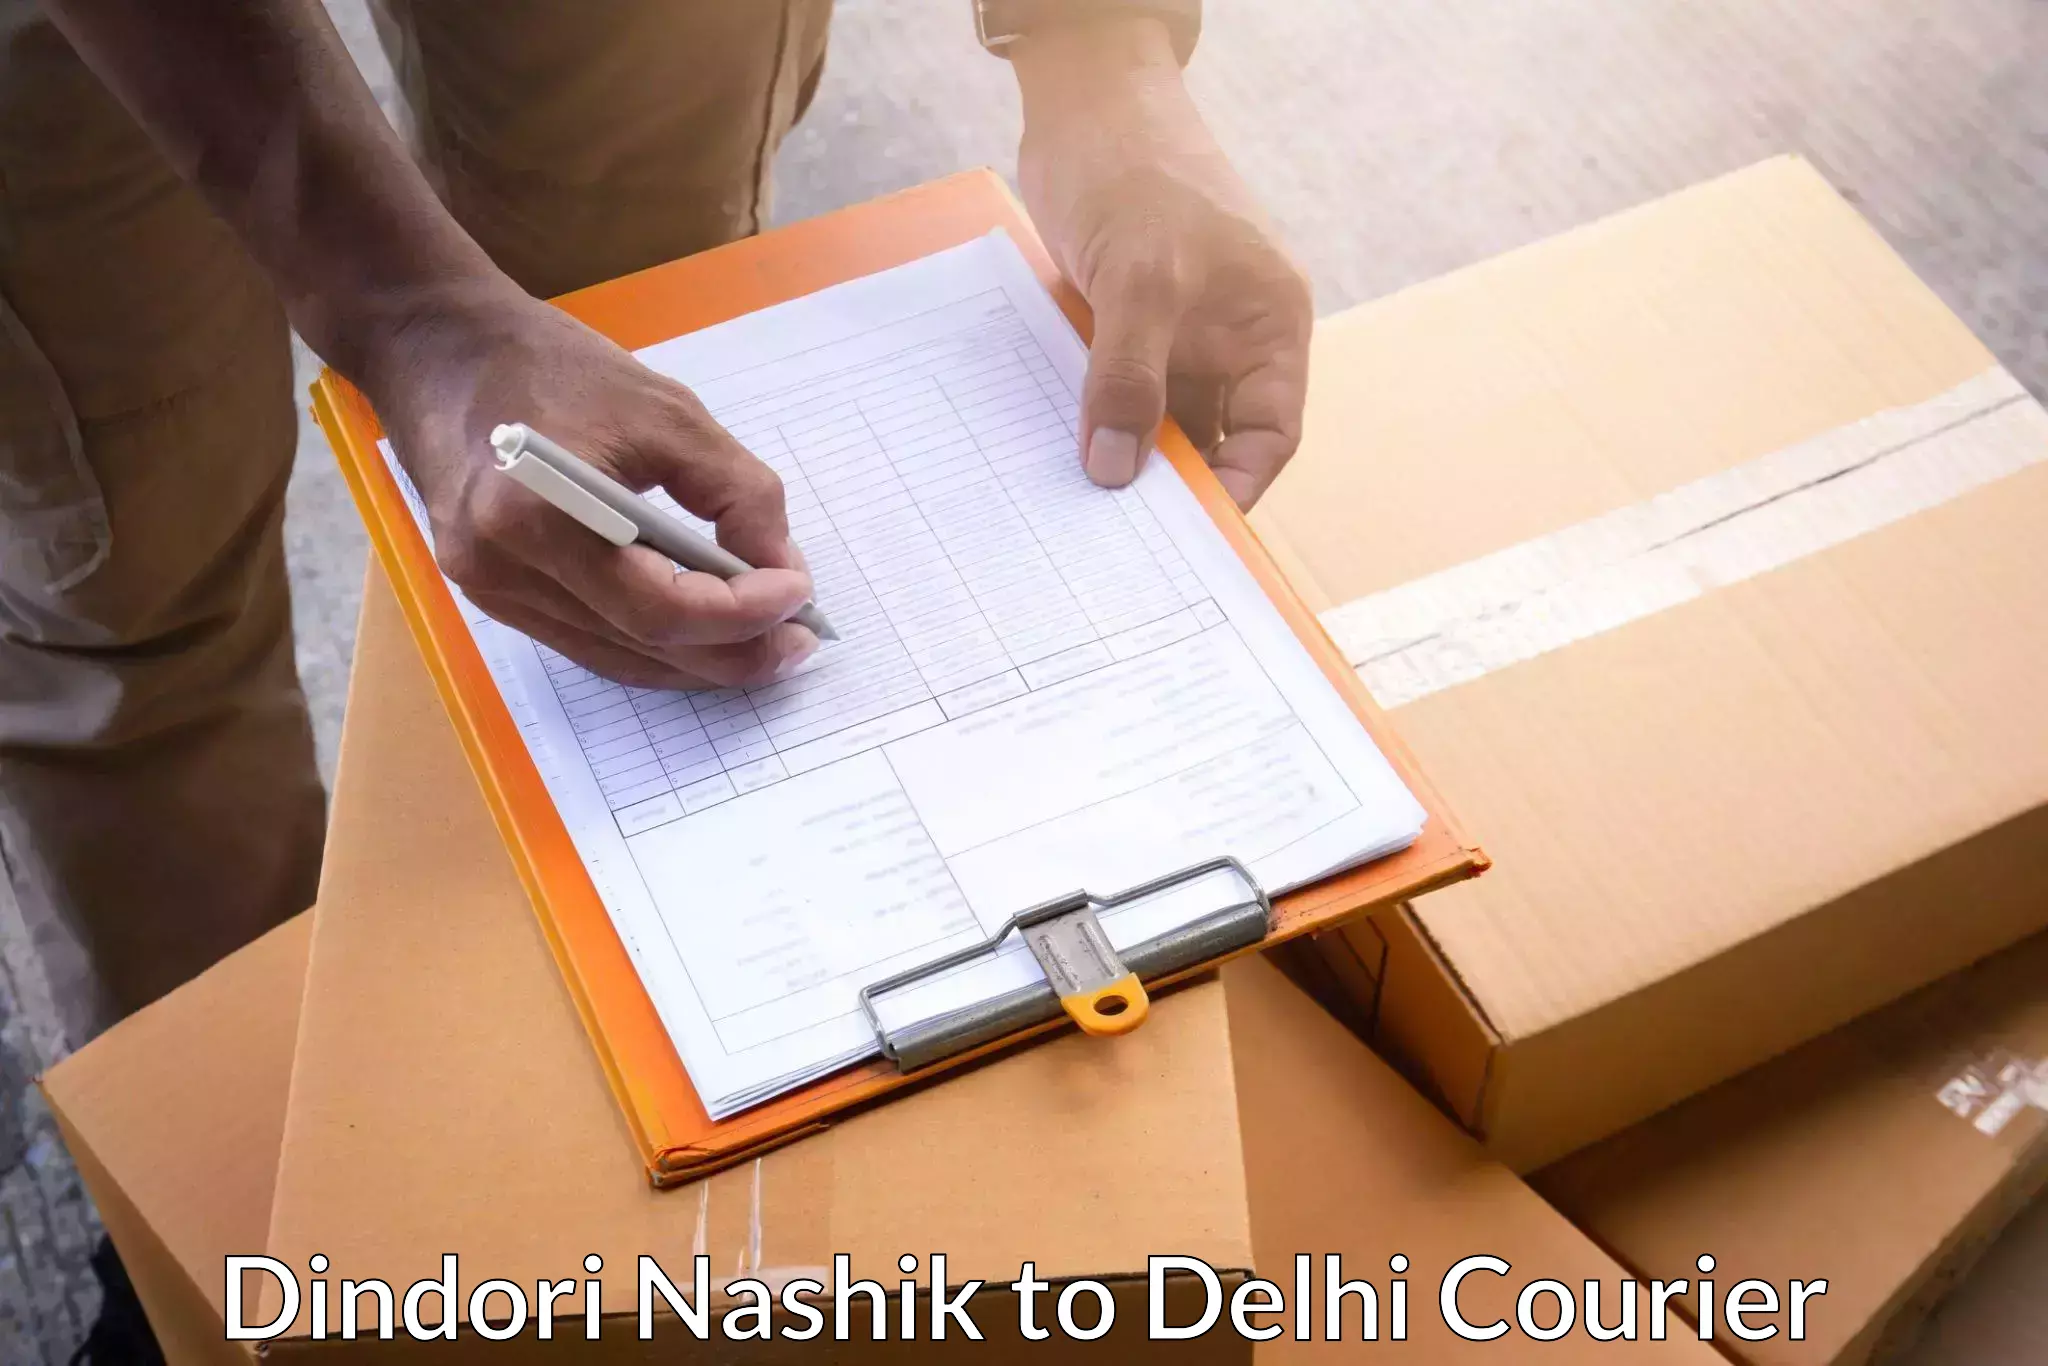 Affordable parcel service Dindori Nashik to East Delhi